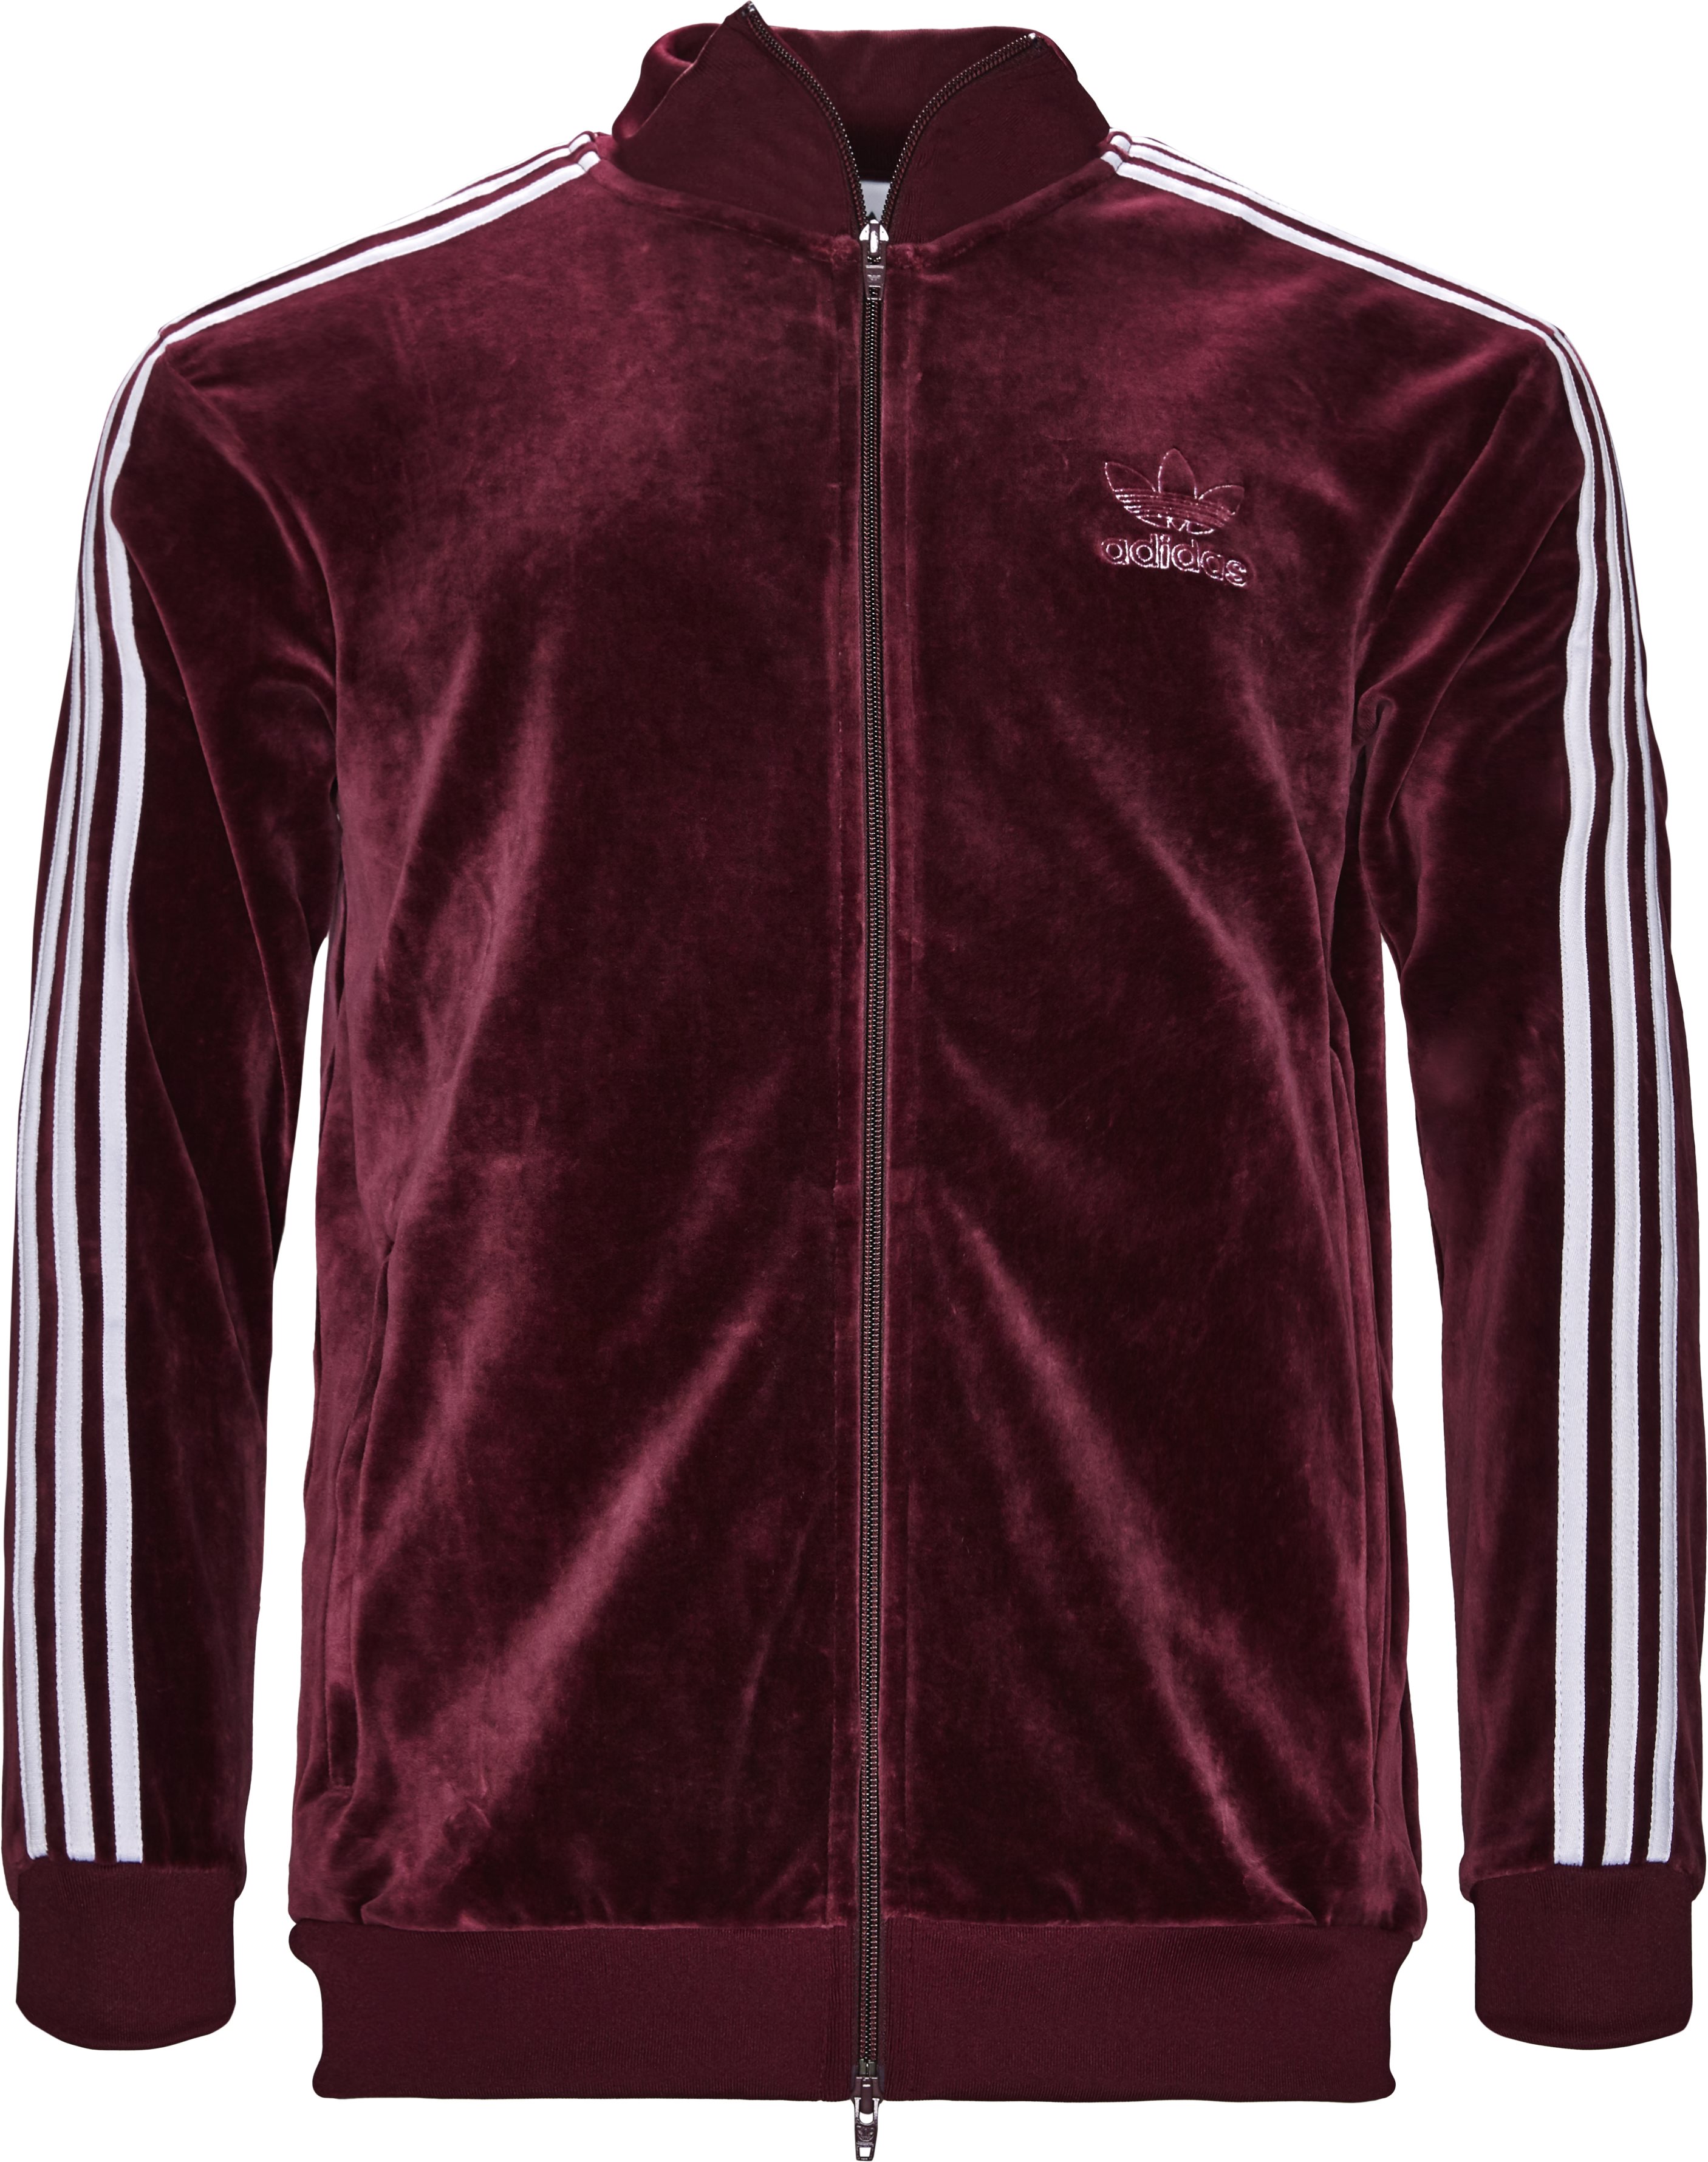 stout velsignelse Merchandiser VELOUR DH5789 Sweatshirts BORDEAUX fra Adidas Originals 349 DKK